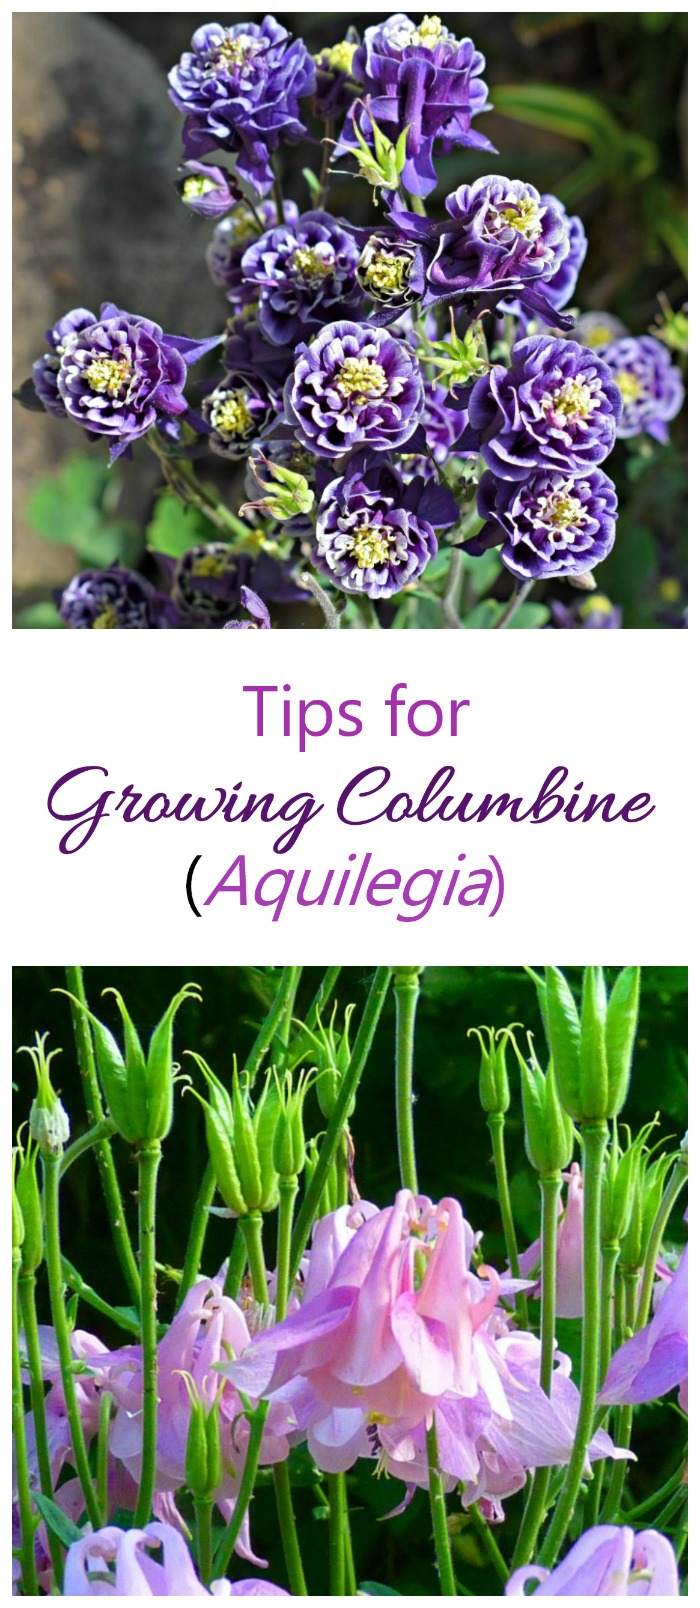 تزايد كولومبين - كيفية زراعة Aquilegia للحصول على أزهار فريدة على شكل جرس